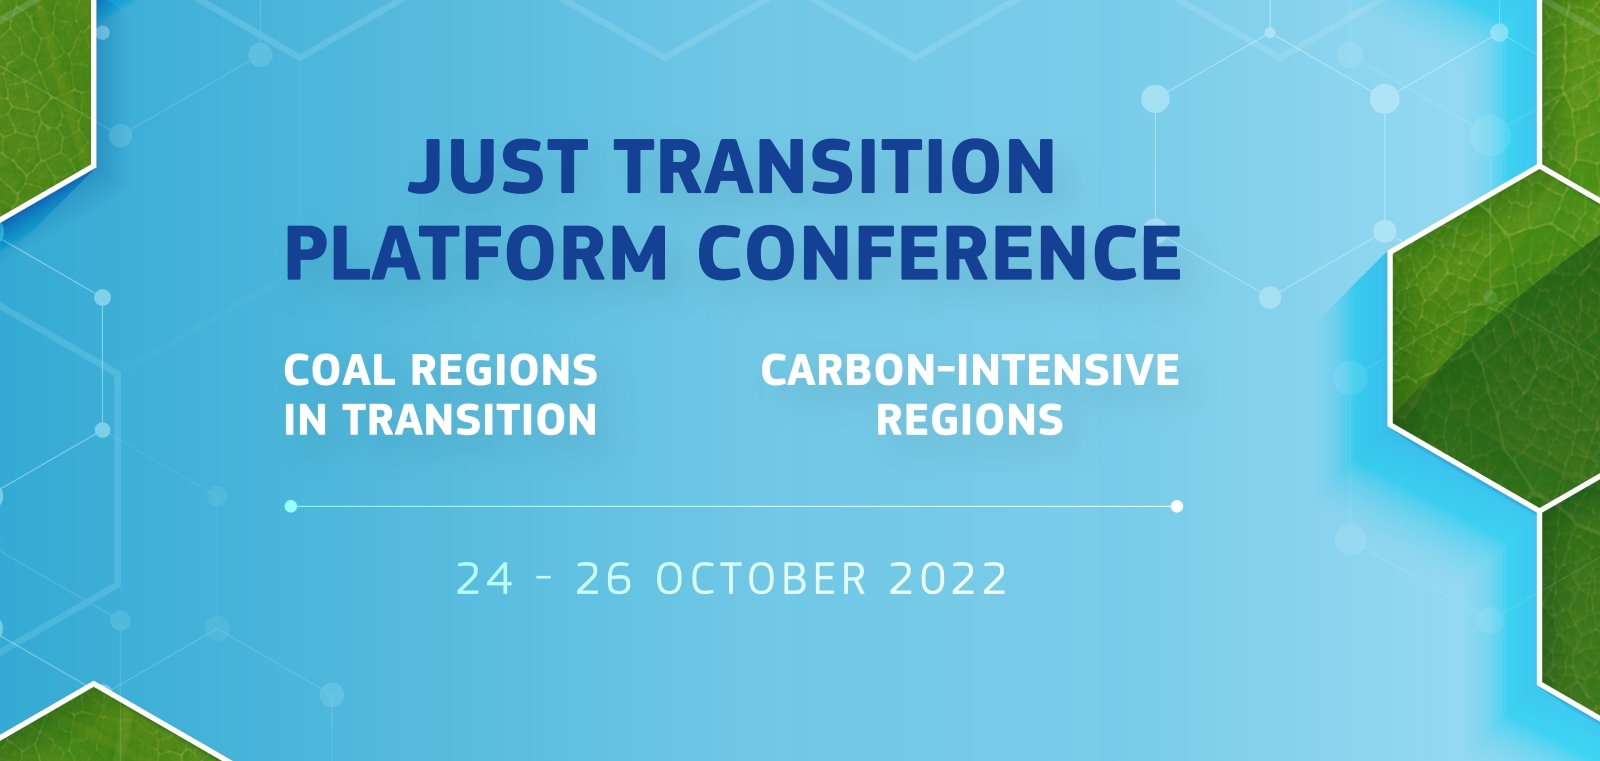 Registrations open for Just Transition Platform Conference on 24-26 October